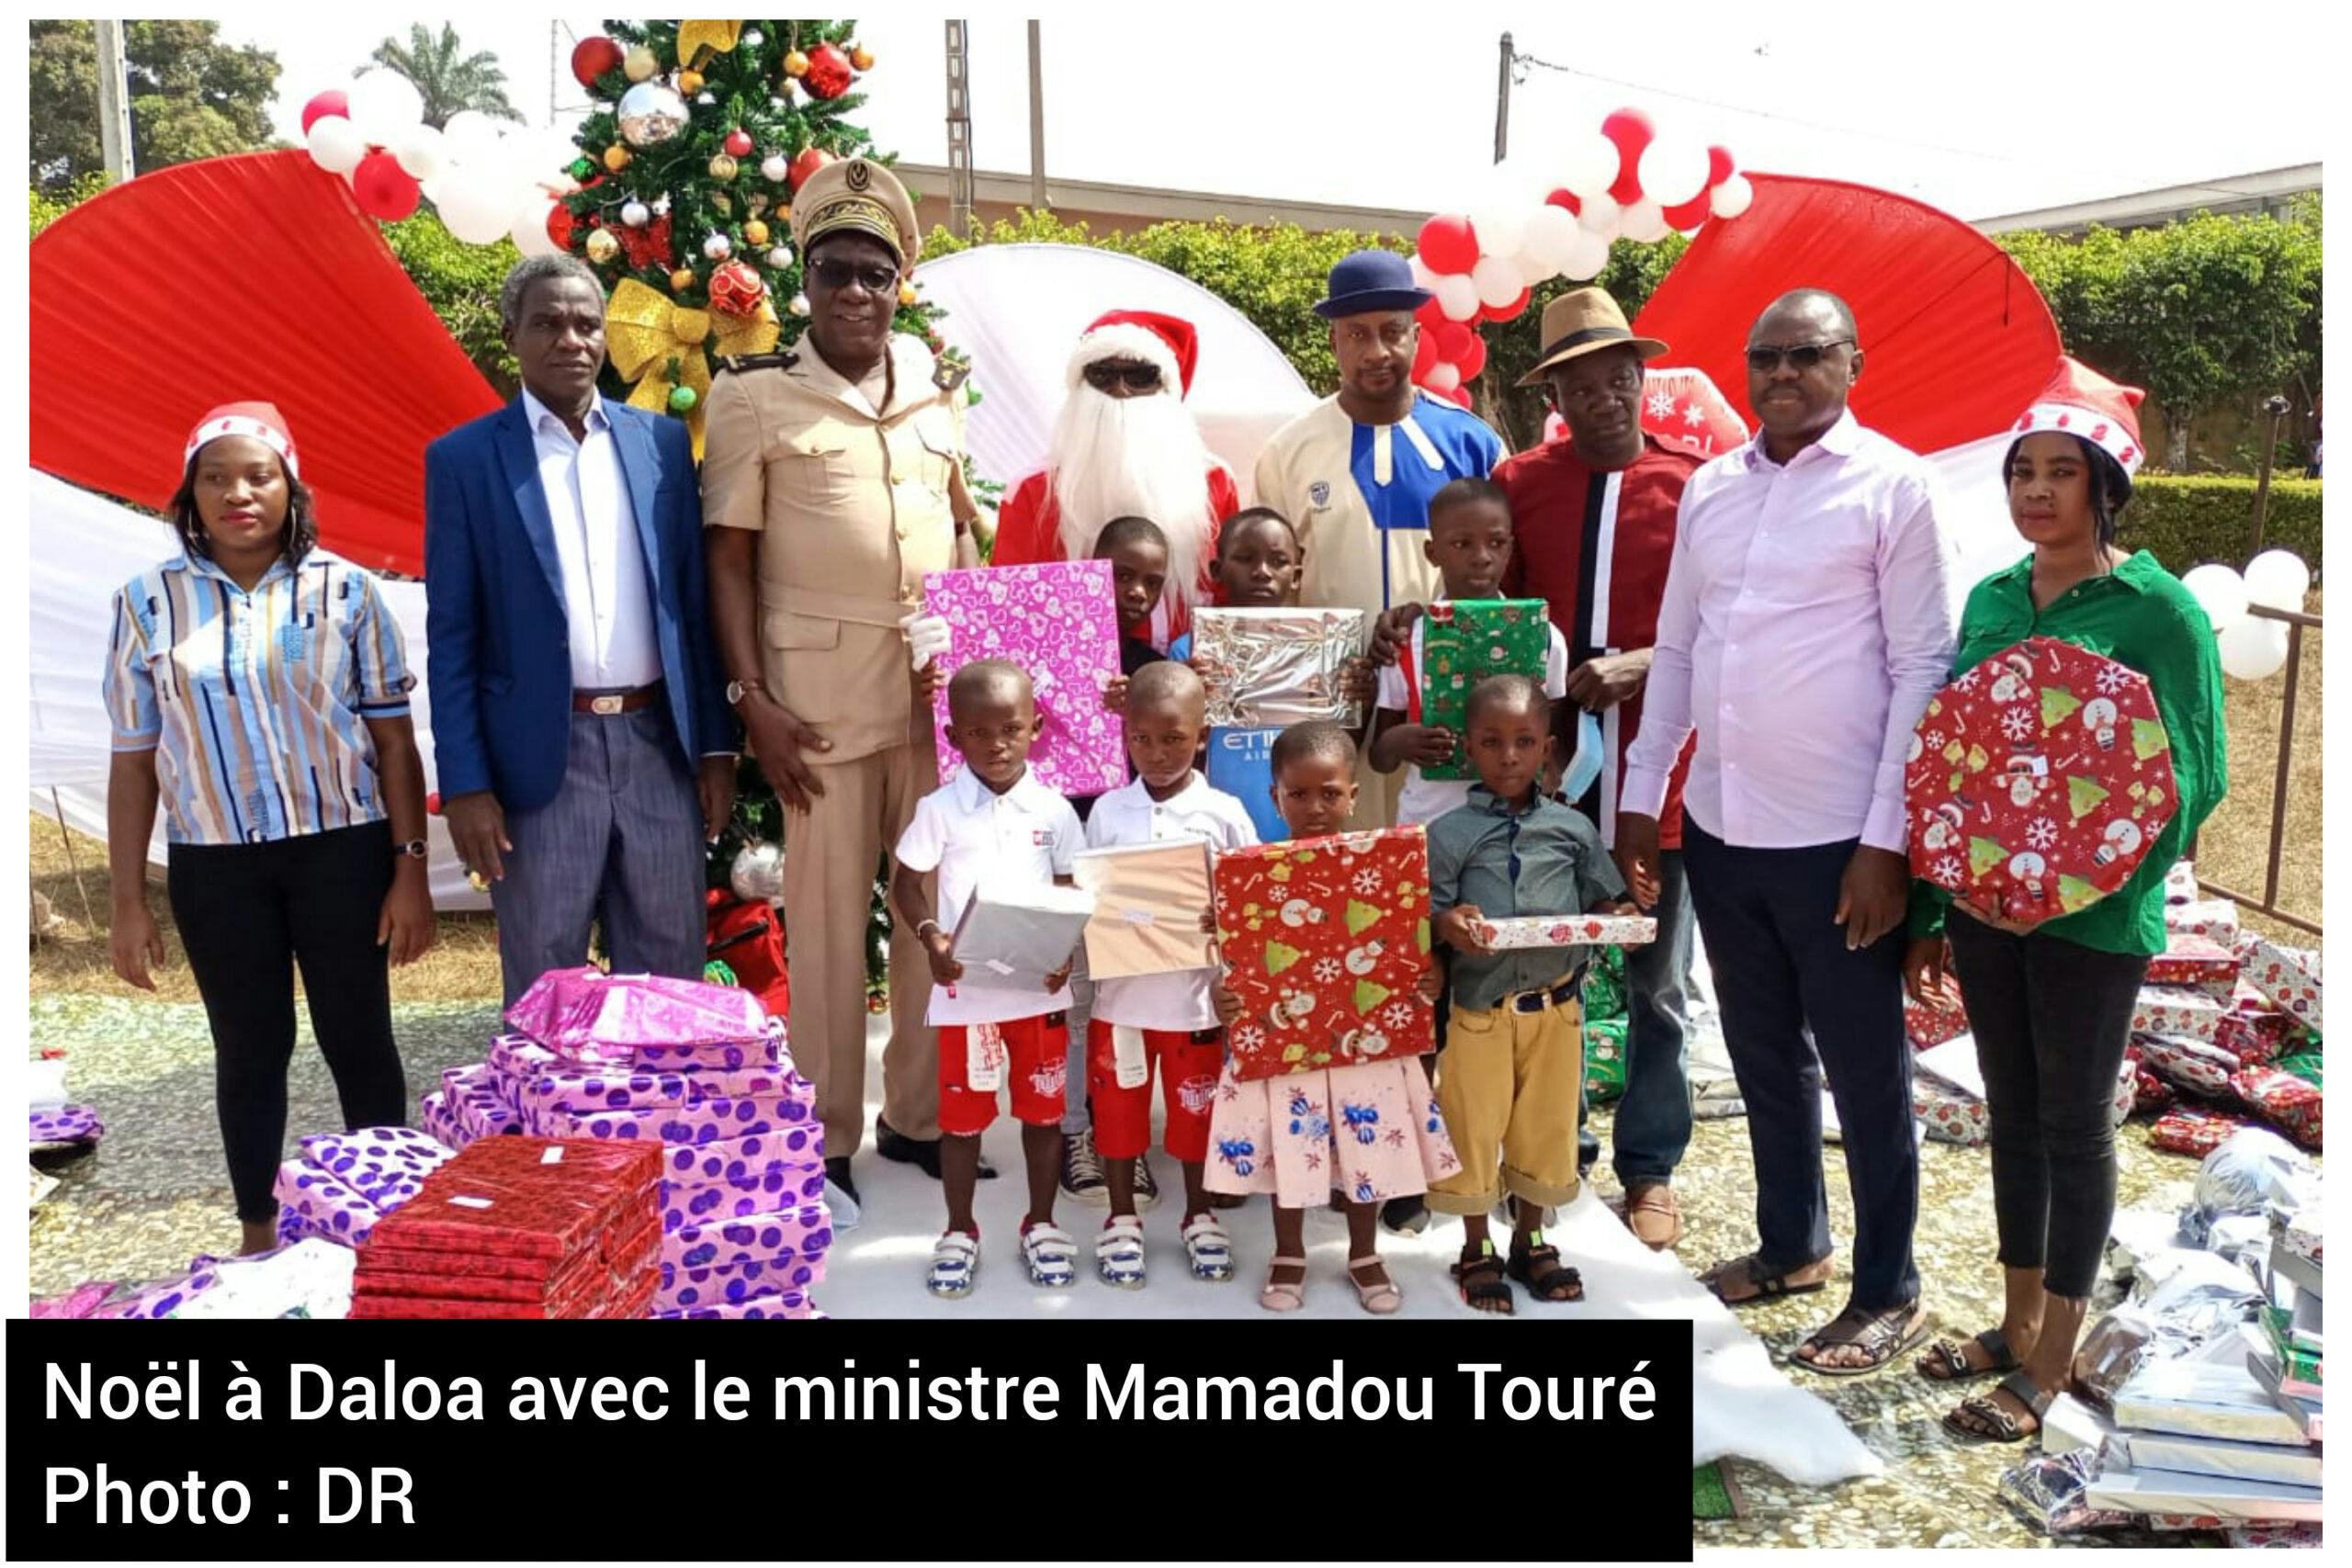 Noël 2021 : le ministre Mamadou Touré gâte 1000 enfants à Daloa